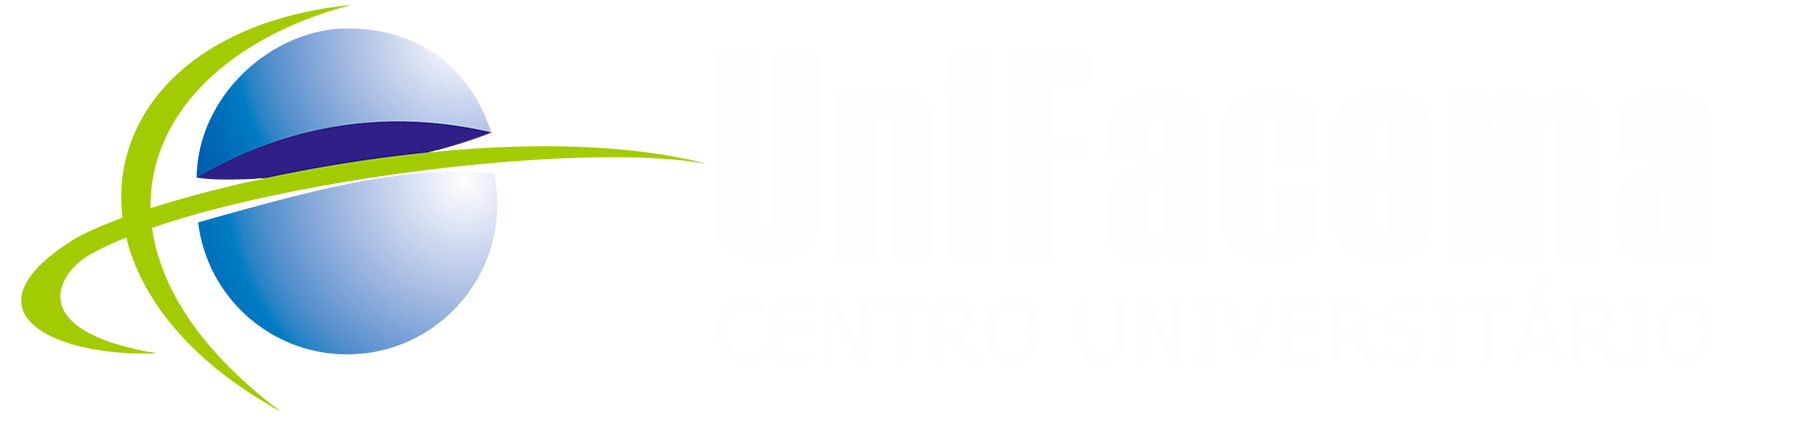 Logo da unifacema